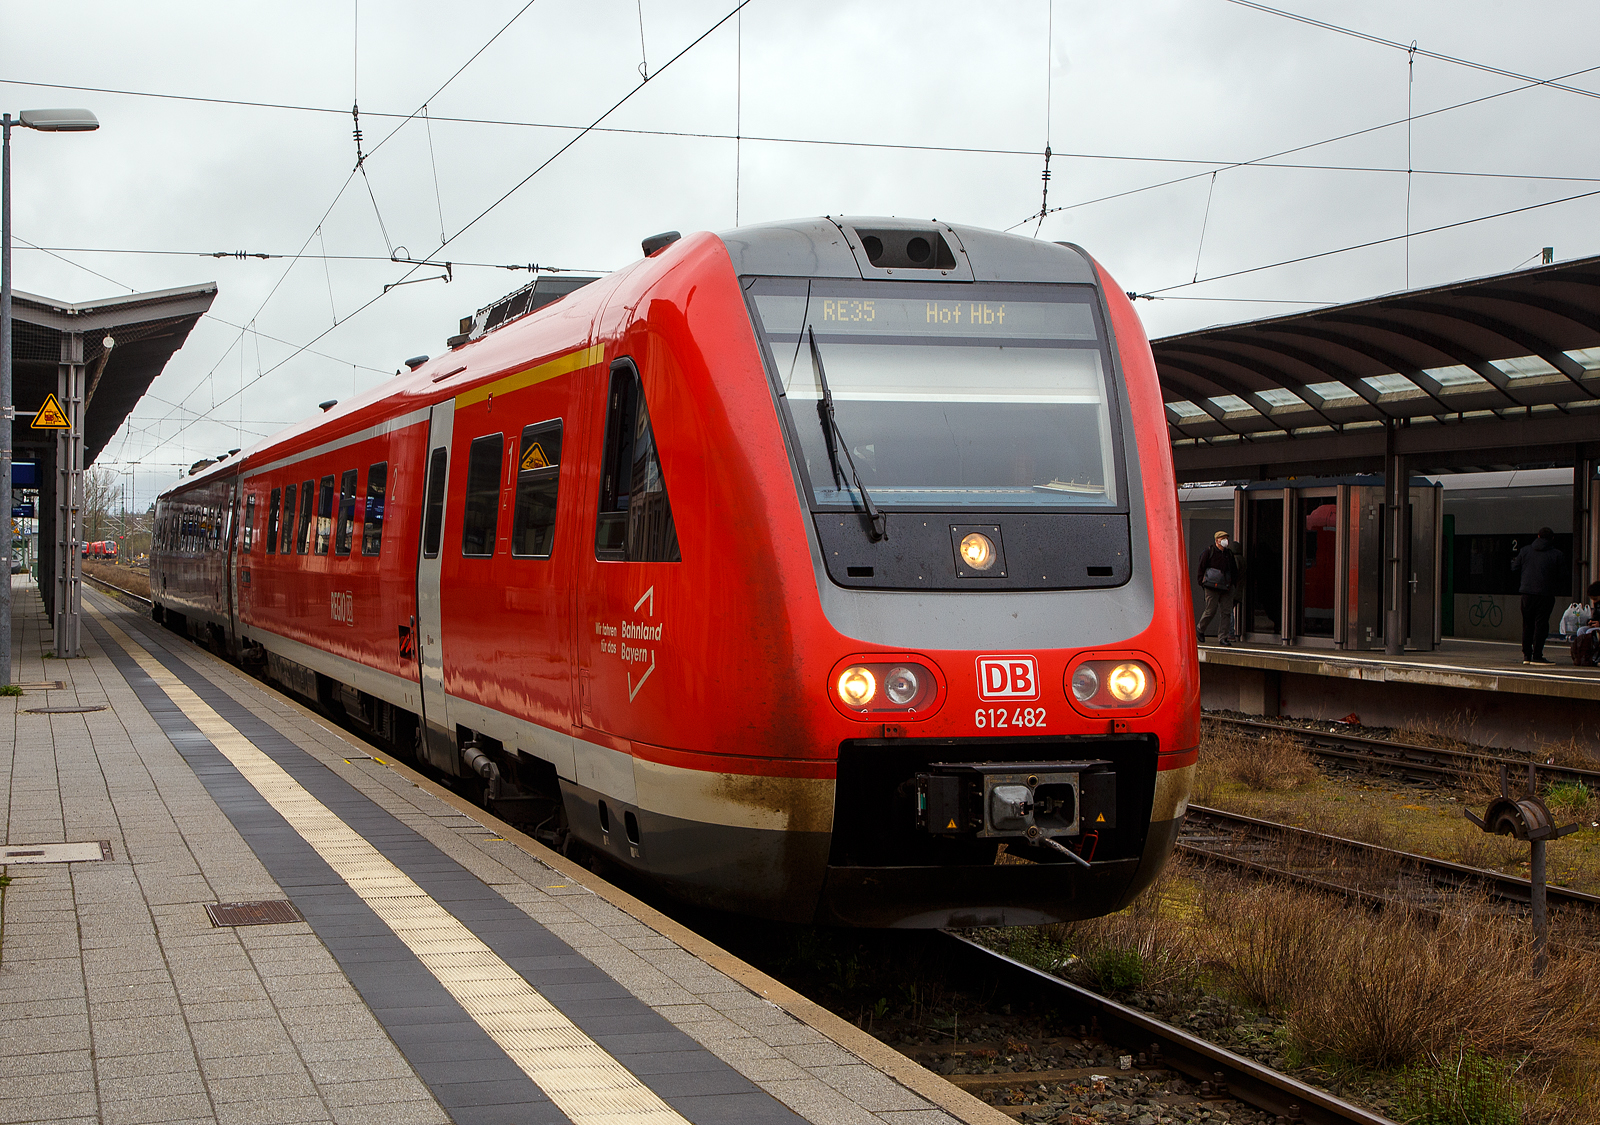 Der Dieseltriebwagen mit Neigetechnik 612 482 / 612 982 (95 80 0612 482-9 D-DB / 95 80 0612 982-8 D-DB), ein Bombardier  RegioSwinger  der DB Regio Bayern, hat als RE 35 „Main-Saale-Express“ (Bamberg – Lichtenfels –Hof), am 17.04.2023 seinen Zielbahnhof Hof erreicht.

Der Triebzug wurde 2003 von Bombardier unter den Fabriknummer 24173 und 24174 gebaut.

Die Fahrzeuge der Baureihe 612 sind Neigetechnik-Nahverkehrsdieseltriebwagen der Deutschen Bahn. Die Fahrzeuge werden vor allem als Regional-Express und Interregio-Express auf bogenreichen Strecken eingesetzt. Der Hersteller Bombardier Transportation bezeichnet die Fahrzeuge als RegioSwinger.

Der VT 612 ist ein zweiteiliger Dieseltriebzug mit Neigetechnik und dieselhydraulischen Antrieb. Die Neigetechnik erlaubt das bogenschnelle fahren. Durch das bogenschnelle fahren kann die Geschwindigkeit im Vergleich zu „herkömmlichen“ Schienenfahrzeugen in kurvenreichen Strecken wesentlich erhöht werden, da sich das Fahrzeug bis zu 8 Grad neigen kann. Ähnlich wie ein serpentinenpassierender Motorradfahrer durchfährt der Zug die Kurve, was erhebliche Fahrzeitverkürzung möglich macht. Voraussetzung hierfür ist jedoch nicht nur die Fahrzeugtechnik, sondern auch umfangreiche technische Anpassungen an den Gleis- und Signalanlagen entlang der Strecke und den Bahnhöfen.

Nach den problembehafteten Triebwagen der Reihe 611 unternahm die Deutsche Bahn mit der fast komplett neu konstruierten Baureihe 612 einen zweiten Versuch, einen zuverlässigen Neigetechnik-Zug aus deutscher Produktion auf die Schiene zu bringen.

Wie bei ihren Vorgängern sind bei der Baureihe 612 beide Wagen motorisiert. Verwendet werden dabei 19-Liter-Cummins- Sechszylinder-Reihenmotor-Dieselmotoren des Typs QSK19-R mit je 563 kW Leistung, die eine Geschwindigkeit von 160 km/h ermöglicht. Die Kraftübertragung erfolgt hydraulisch über je ein Strömungsgetriebe, in das außerdem eine hydrodynamische Bremse integriert ist. Die Triebdrehgestelle liegen bei beiden Wagen einer Einheit am Kurzkuppelende, die Drehgestelle unter den Führerständen sind Laufdrehgestelle. Der Wagenkasten stützt sich über Luftfedern und eine Wiege auf den Drehgestellen ab und ist elektrisch 8° zu jeder Seite neigbar. Die Steuerung der Neigetechnik übernimmt das System Neicontrol-E, das über Beschleunigungssensoren in den Enddrehgestellen Beginn und Ende eines Bogens feststellen kann und den Wagenkasten abhängig von Bogenradius und Fahrgeschwindigkeit neigt. Dies erlaubt gegenüber Fahrzeugen ohne Neigetechnik eine Geschwindigkeitssteigerung um bis zu 30 %, sofern die befahrene Strecke sicherungs- und oberbautechnisch für das bogenschnelle Fahren ausgebaut ist. Zusätzlich zu den Betriebsbremsen besitzen die Triebwagen Federspeicherbremsen als Feststellbremsen und für Schnellbremsungen Magnetschienenbremsen in den Laufdrehgestellen.

Über die selbsttätigen Scharfenberg-Kupplungen an den Führerstandsenden lassen sich bis zu vier Doppeltriebwagen kuppeln und vielfachsteuern. Die Scharfenberg-Kupplungen verbinden die Druckluft- und Steuerleitungen selbsttätig mit. Die Bordrechner der Triebzüge stellen automatisch die Zugkonfiguration fest. Für die Aufrechterhaltung gewisser Grundfunktionen wie Beleuchtung und Heizung ist jeder Triebwagen selbst verantwortlich. Es kann nicht in größerem Umfang elektrische Energie zwischen den Wageneinheiten ausgetauscht werden. Über die Vielfachsteuerung gelangen Zustands- und Störungsmeldungen zum aktiven Führerstand.

TECHNISCHE DATEN:
Spurweite: 1.435 mm (Normalspur)
Achsformel: 2’B’+ B’2’
Länge über Kupplung (Scharfenberg): 51.750 mm
Achsabstand im Drehgestell: 2.450 mm
Höhe: 4.124 mm
Breite: 2.852 mm
Treibrad- und Laufraddurchmesser: 890 mm
Eigengewicht: 93 t
Dienstgewicht: 116 t
Motorleistung: 2x 560 kW
Höchstgeschwindigkeit: 160 km/h
Sitzplätze: 146
Fußbodenhöhe: 1.290 mm